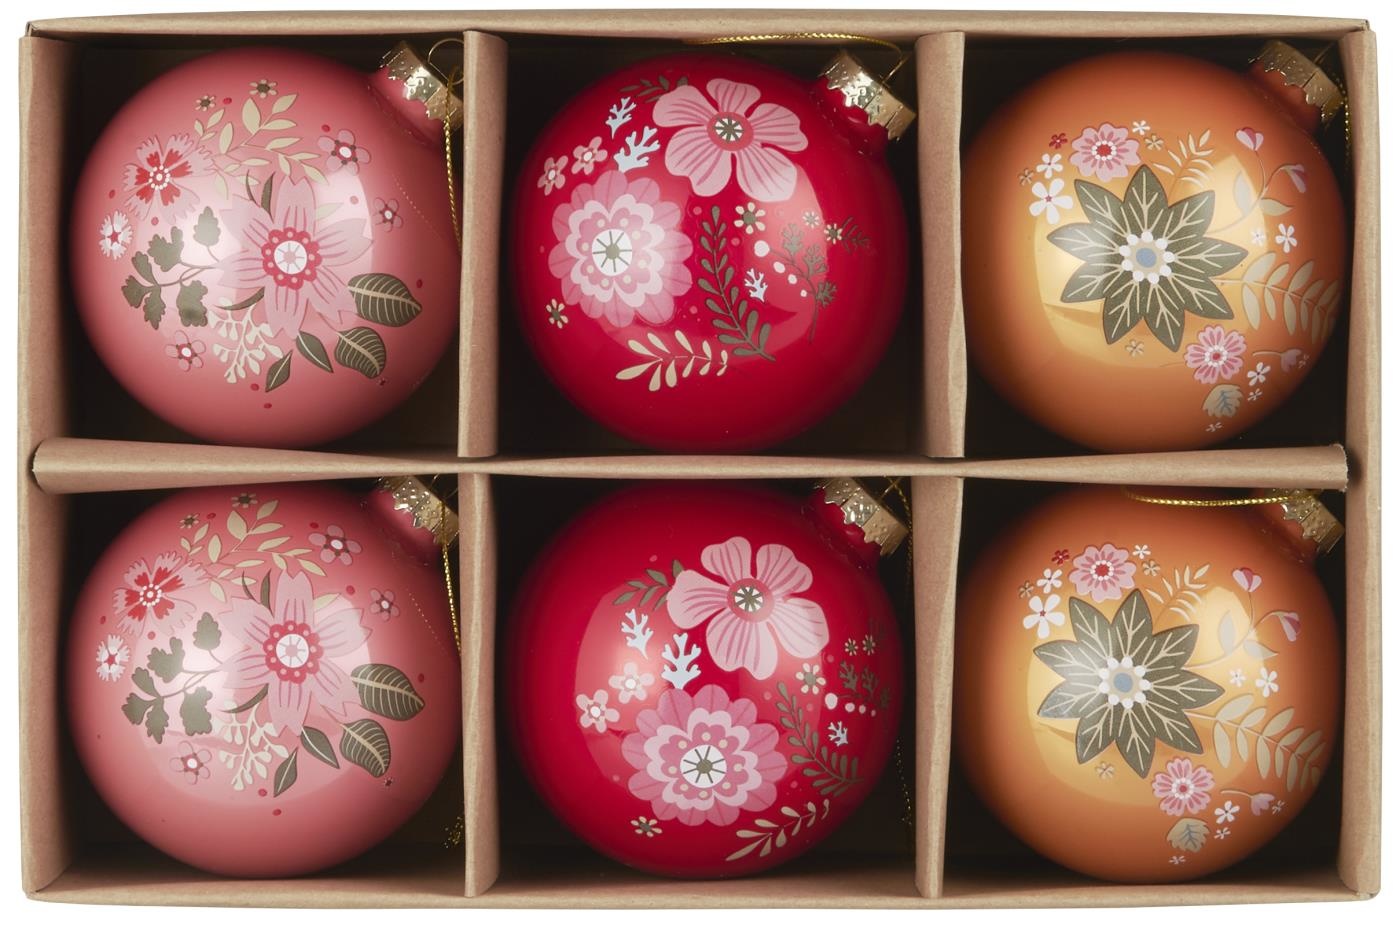 De gasten Hong Kong Pakket IB Laursen / Kerstbal bloemen - Set van 3 - Folklore look - Livv Lifestyle